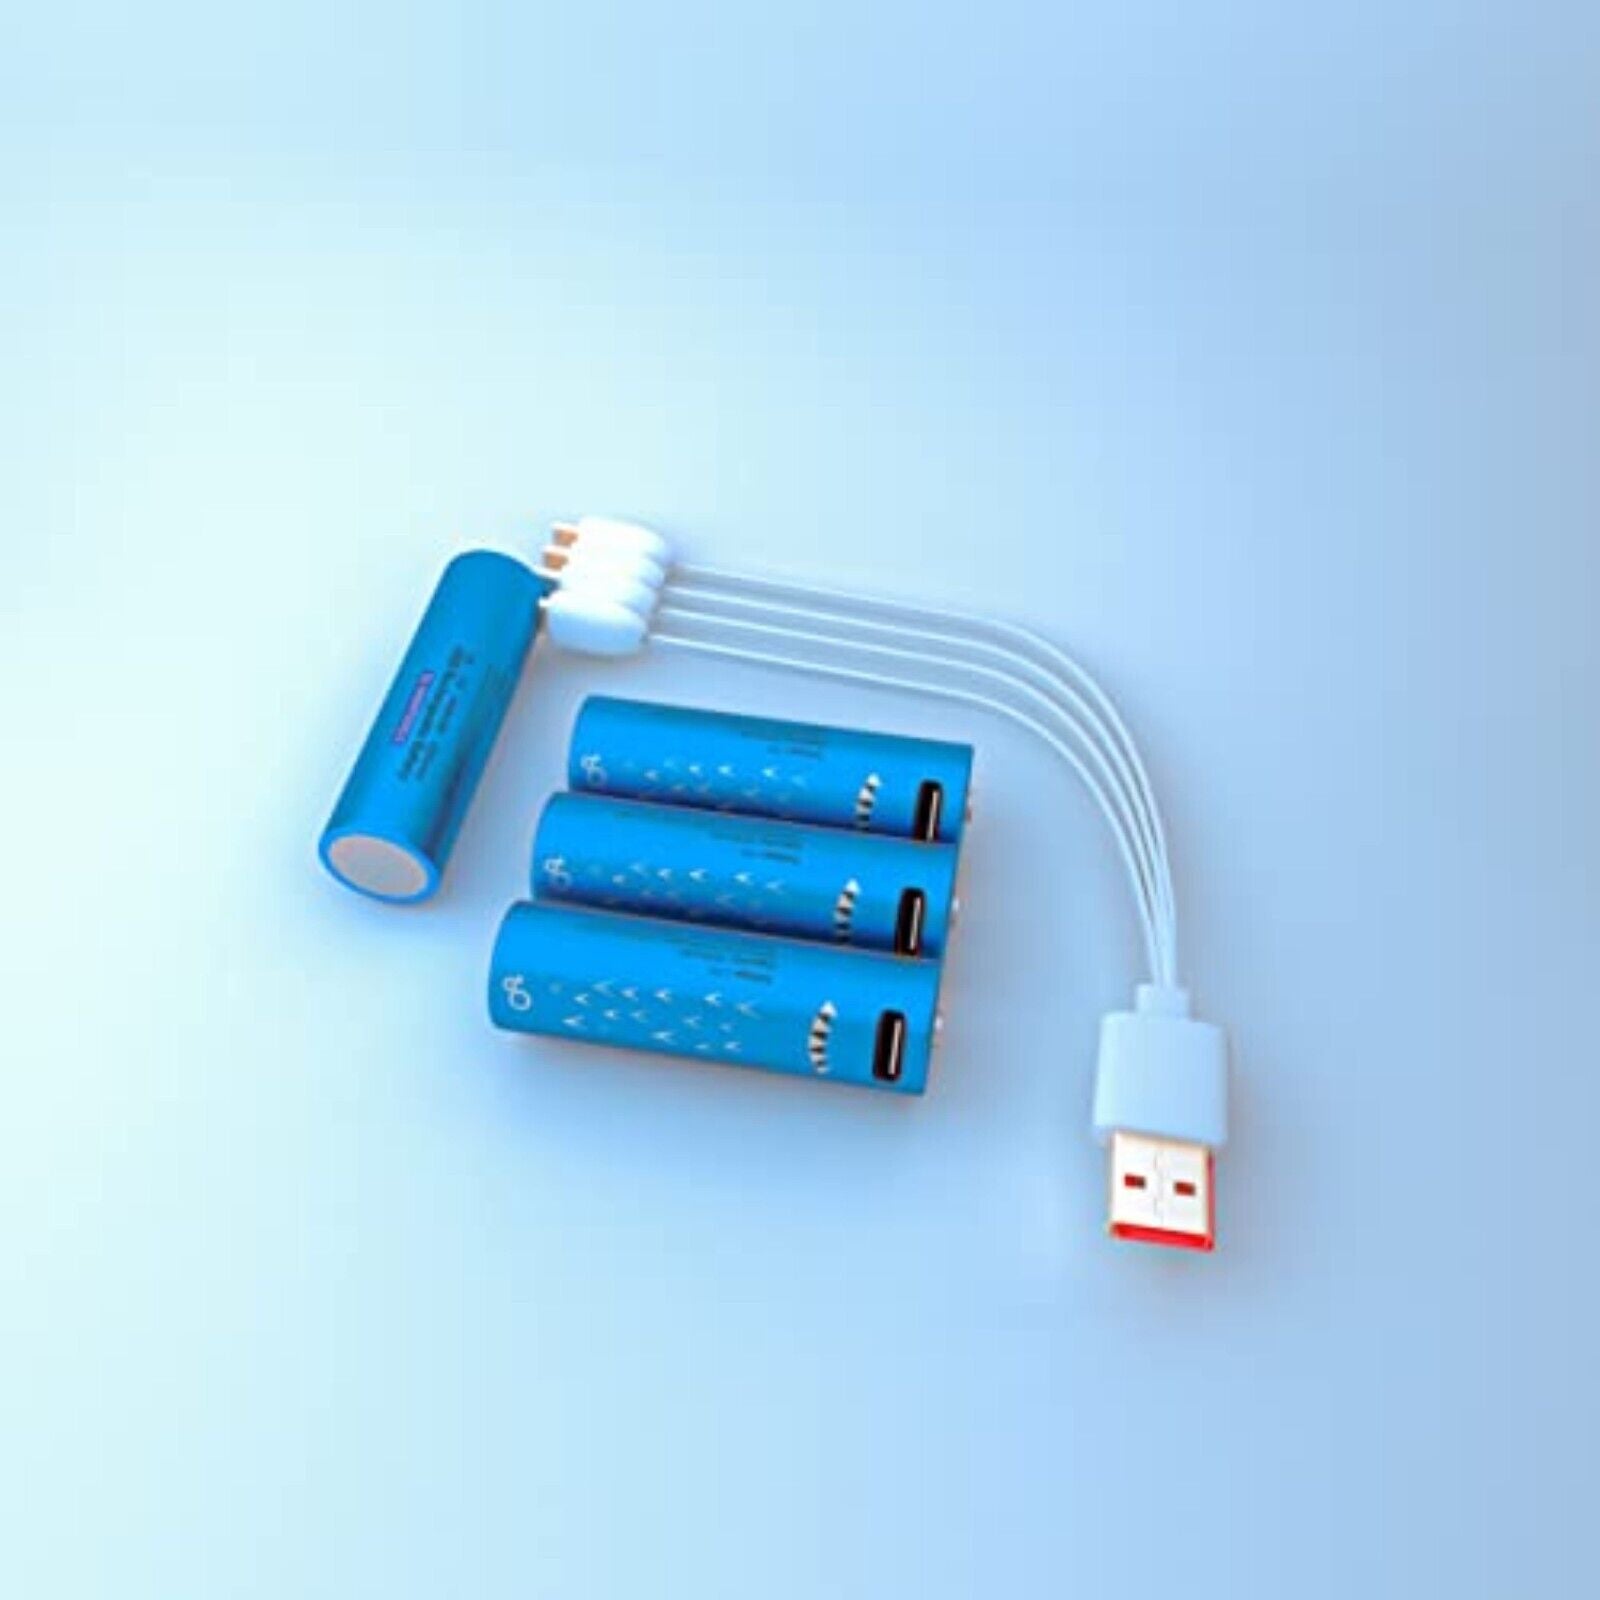 4 blaue Typ-C-AA-Batterien,wiederaufladbare Batterien 1,5V 2000 mWh,Typ-C-Kabel